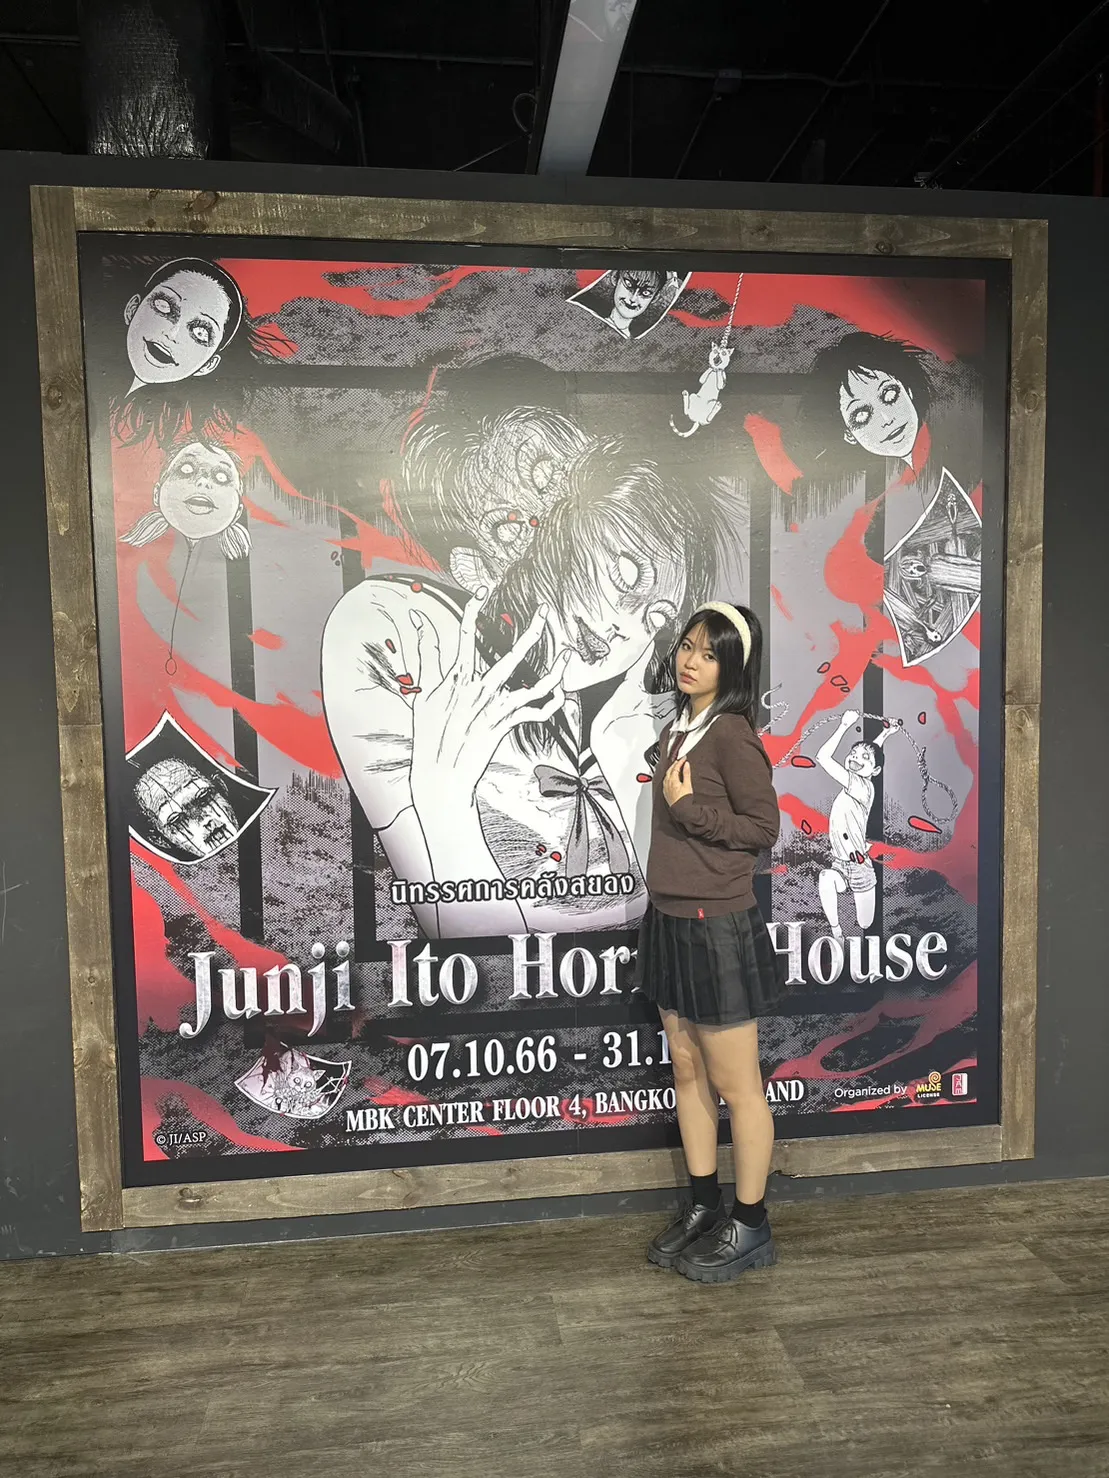 Junji Ito Thrills Bangkok with Horror House This October